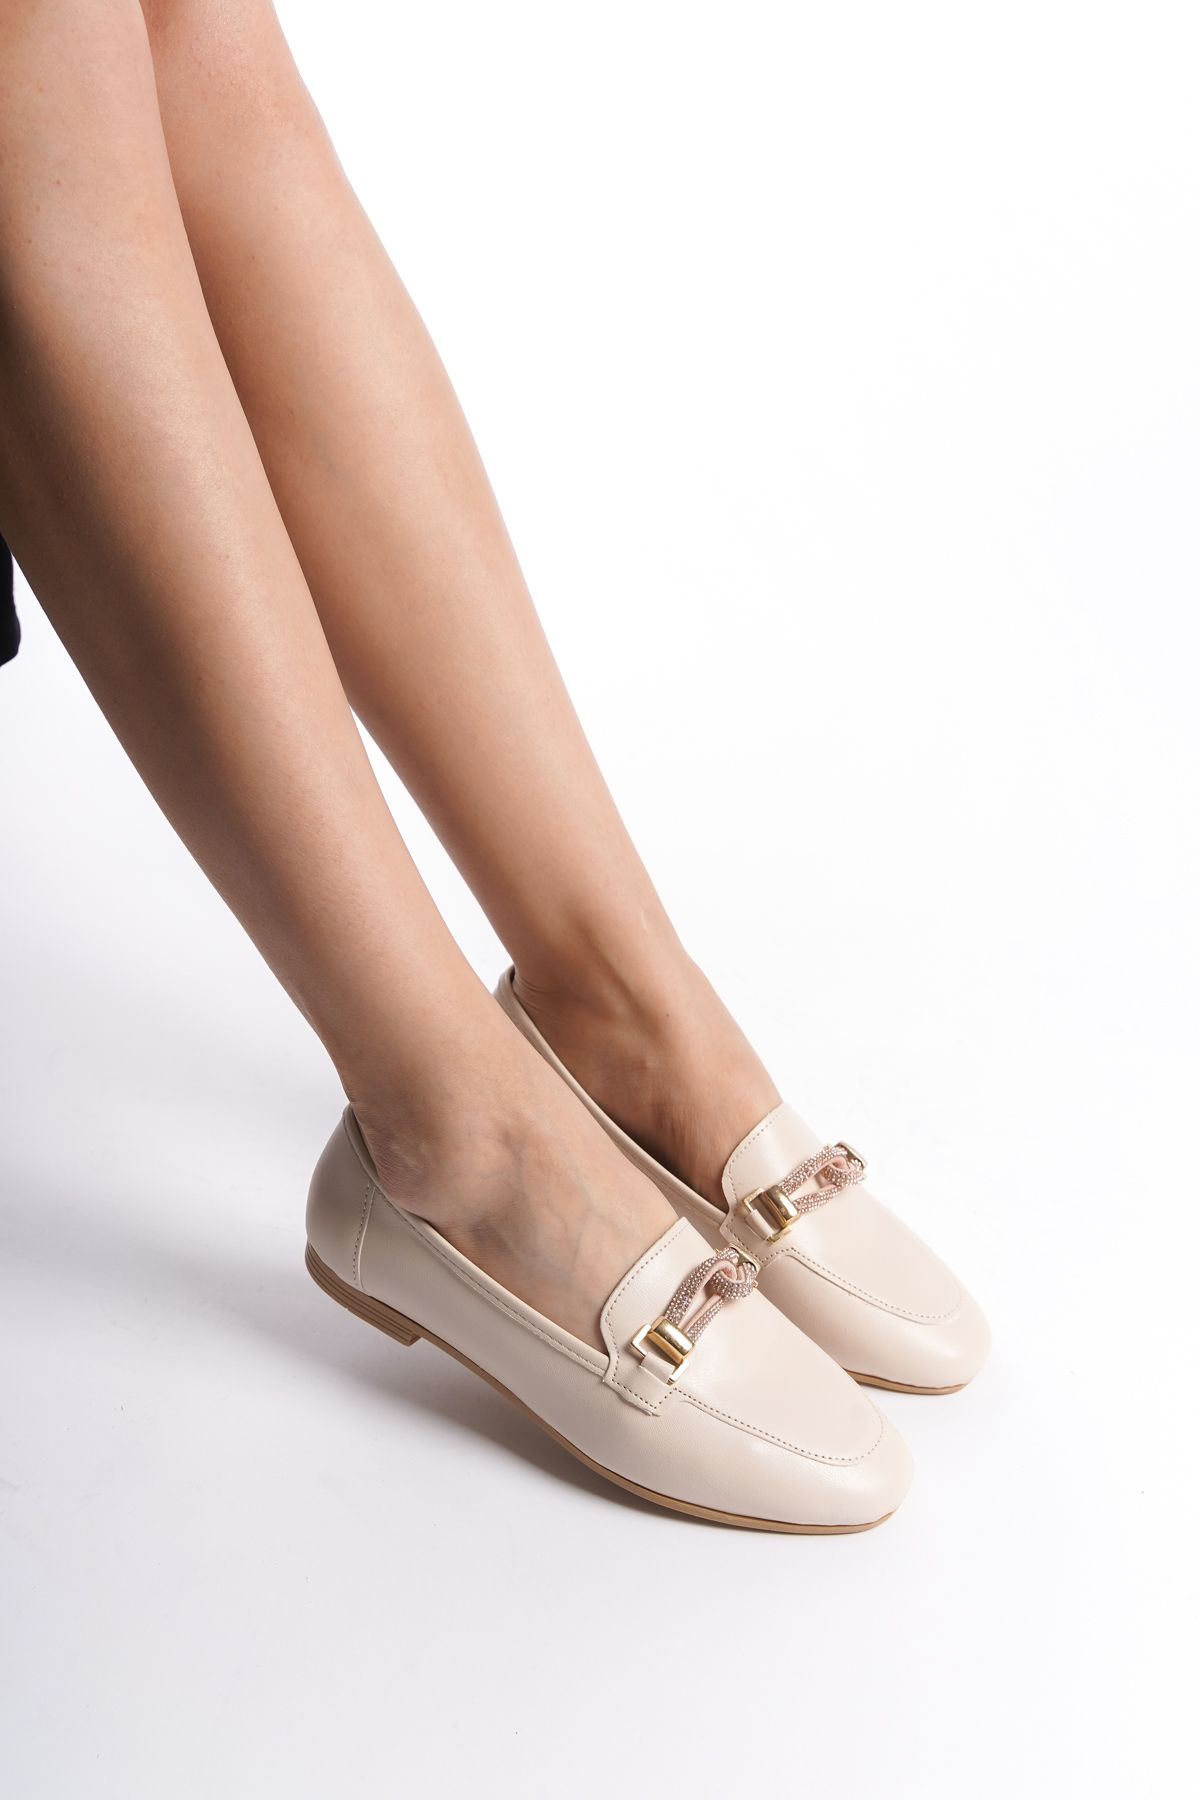 eformoda by emre yılmaz Krem Kadın Günlük Rahat Simli Tokalı Casual Klasik Ayakkabı Babet B29